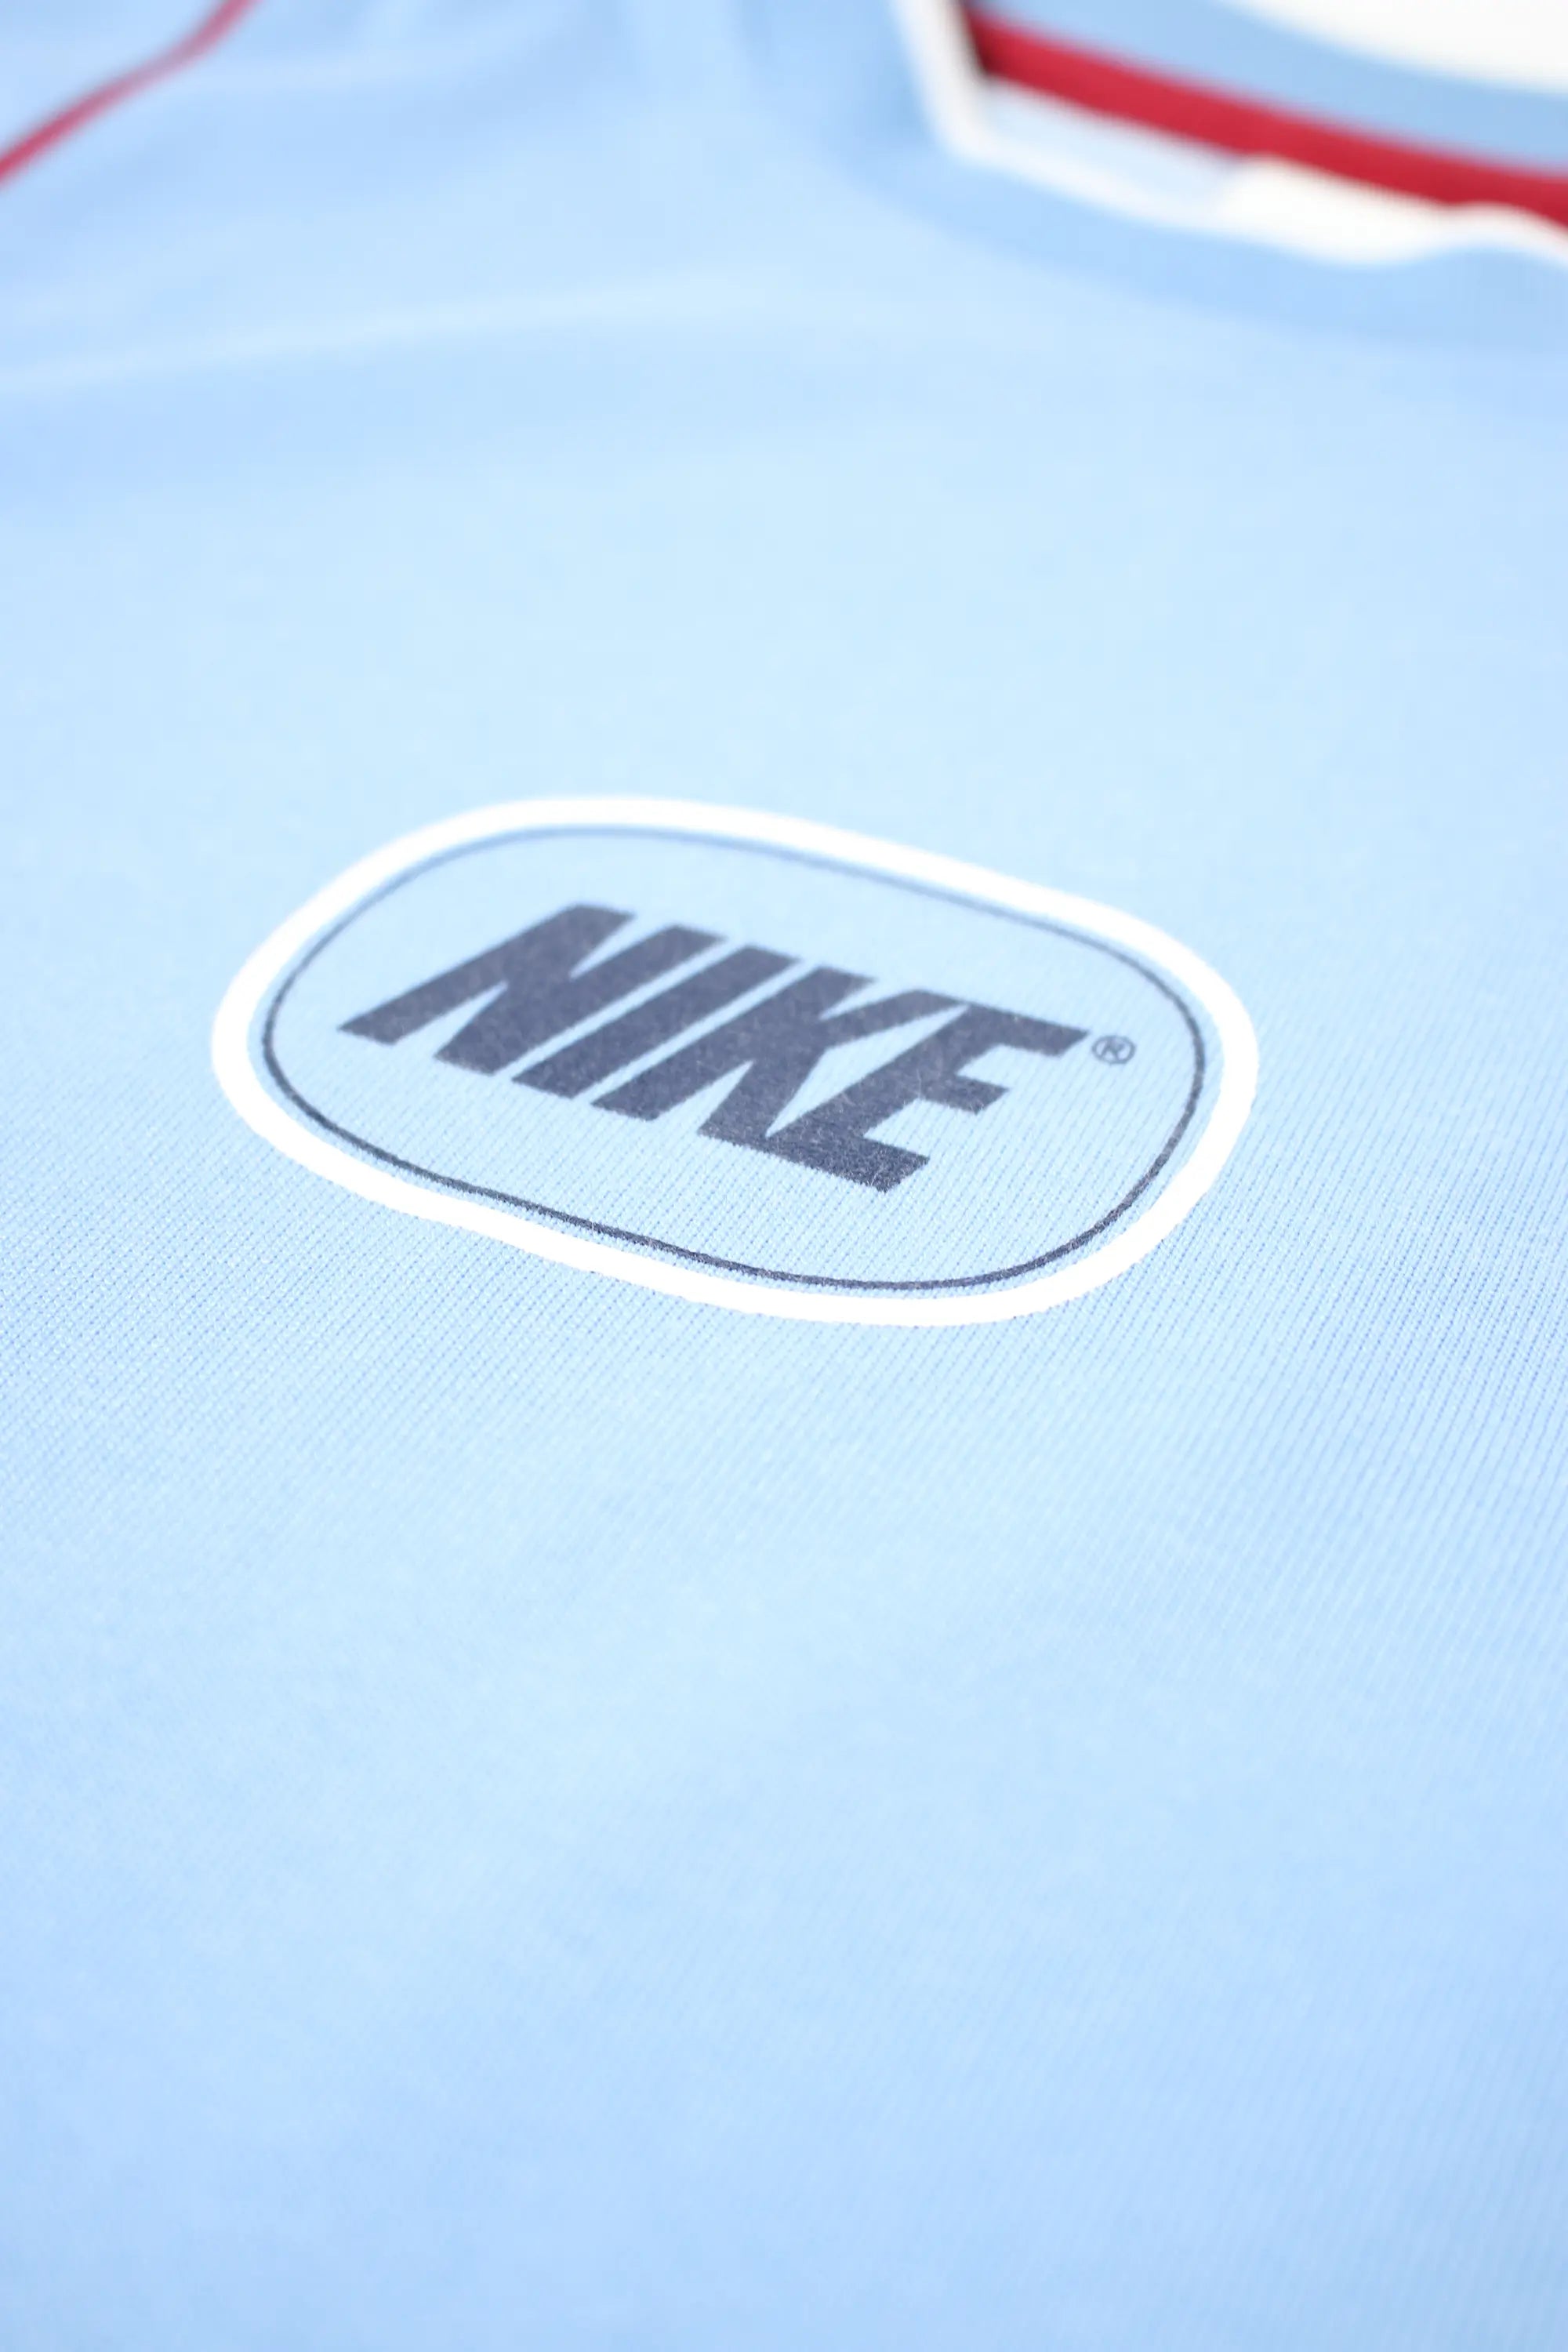 Nike Logo T.